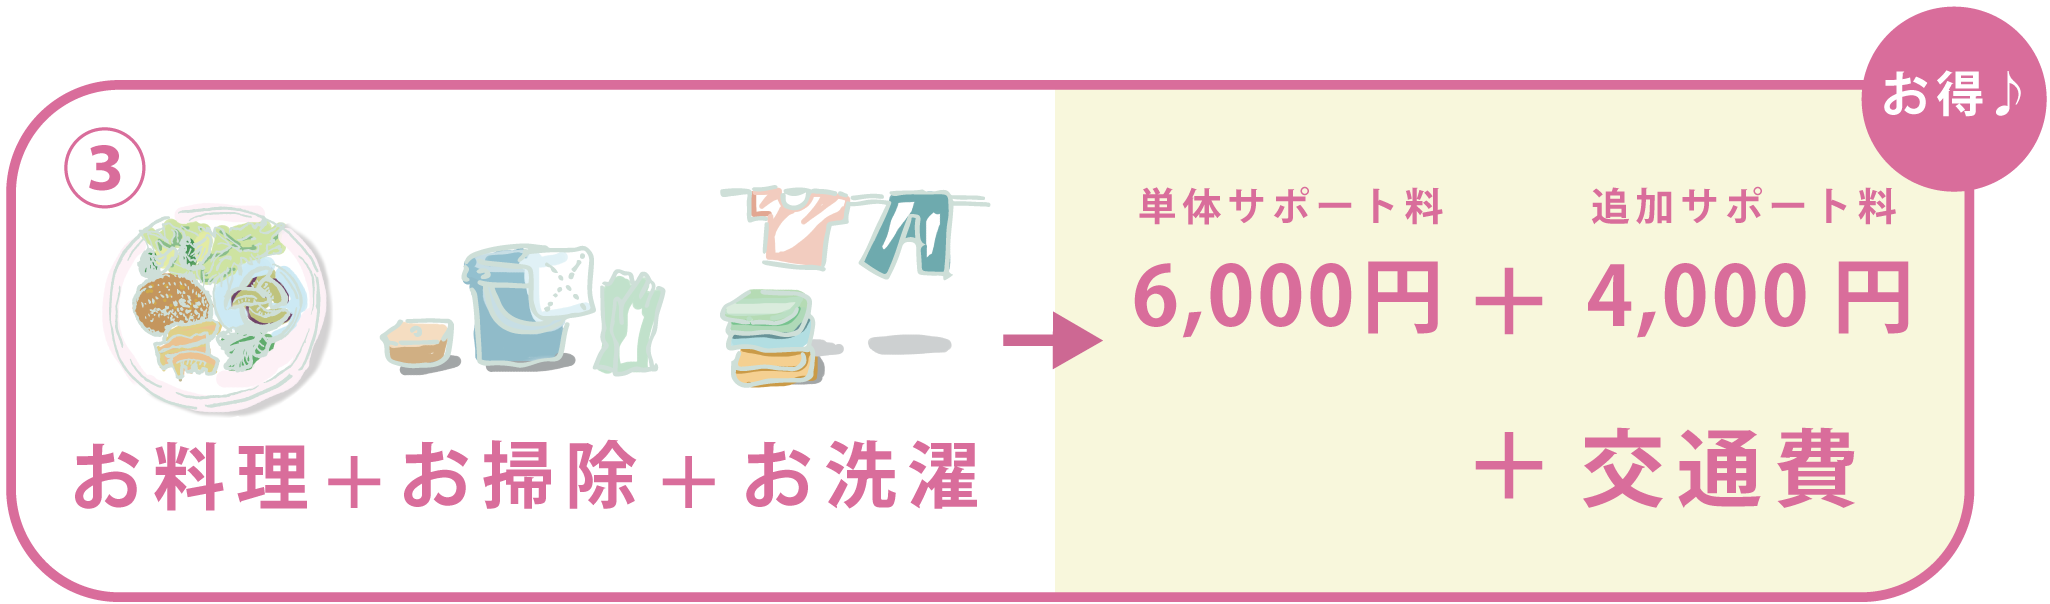 お料理+お掃除+お洗濯 6,000円+4,000円+交通費